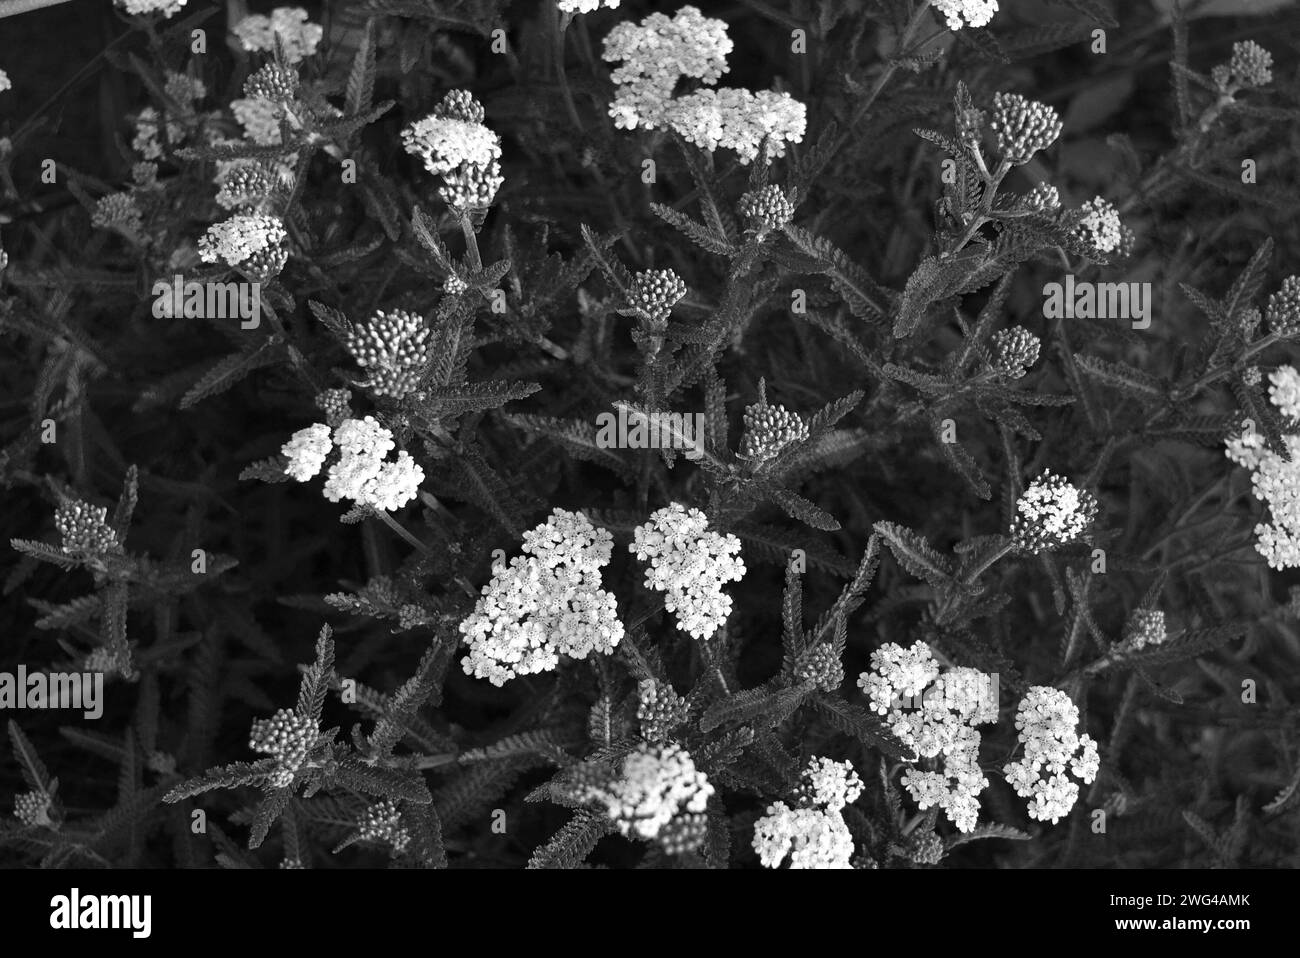 Kunstfoto von schönen und vielfältigen medizinischen weißen Blumen in interessanten Farben und einer ungewöhnlichen Palette. Stockfoto